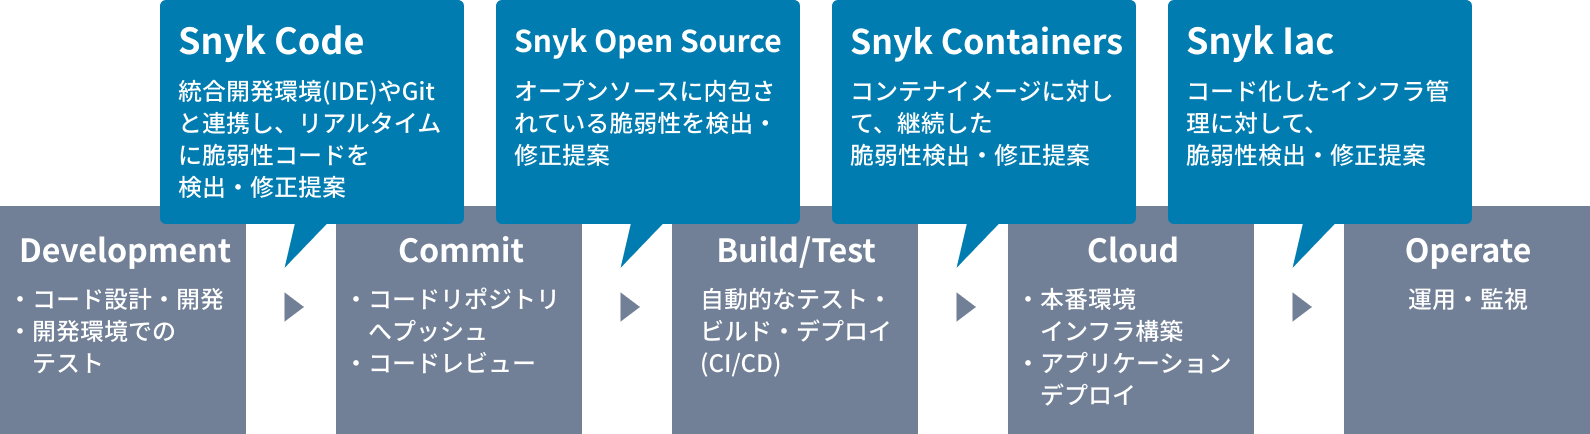 DevOpsの工程内に、Snyk Code（統合開発環境(IDE)やGitと連携し、リアルタイムに脆弱性コードを検出・修正提案）、Snyk Open Source（オープンソースに内包されている脆弱性を検出・修正提案）、Snyk Containers（コンテナイメージに対して、継続した脆弱性検出・修正提案）、Snyk Iac（コード化したインフラ管理に対して、脆弱性検出・修正提案）を組み込みます。